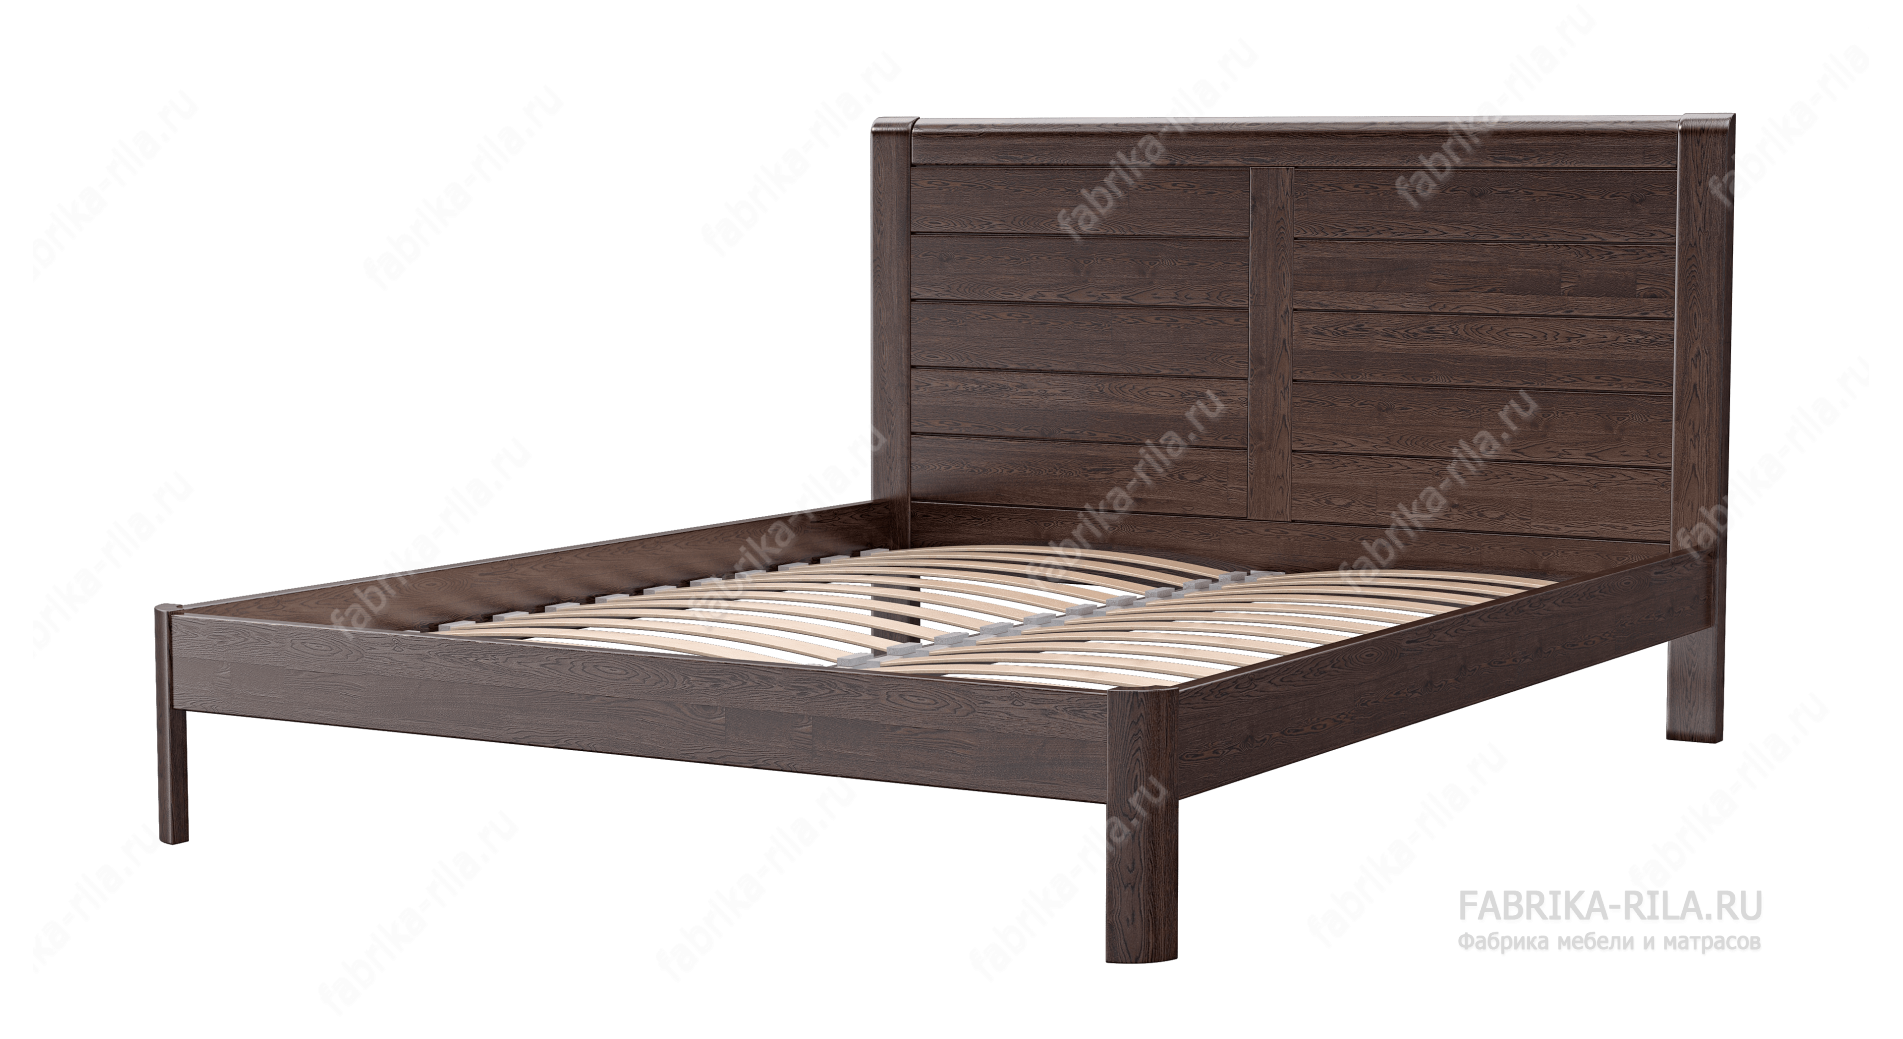 Кровать Riviera — 140x200 см. из сосны